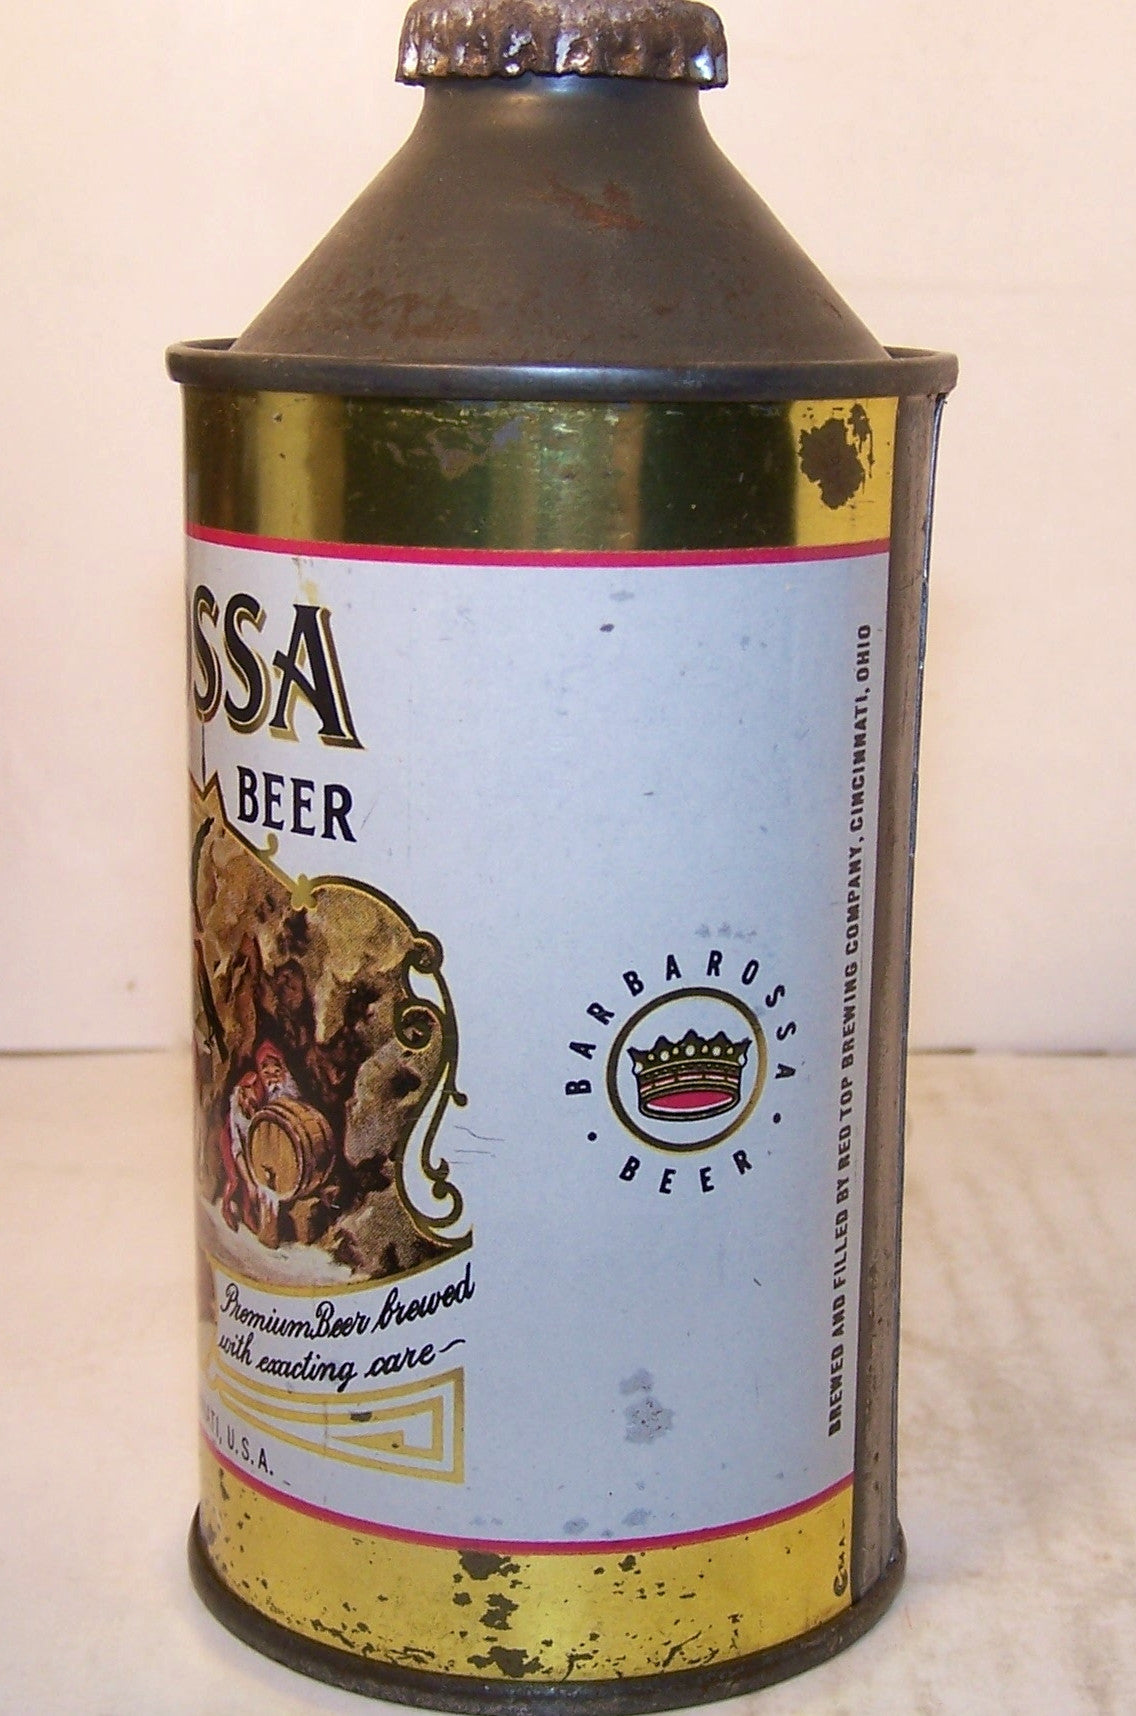 Barbarossa Beer, USBC 150-28, Grade 1-  Sold on 3/2/15